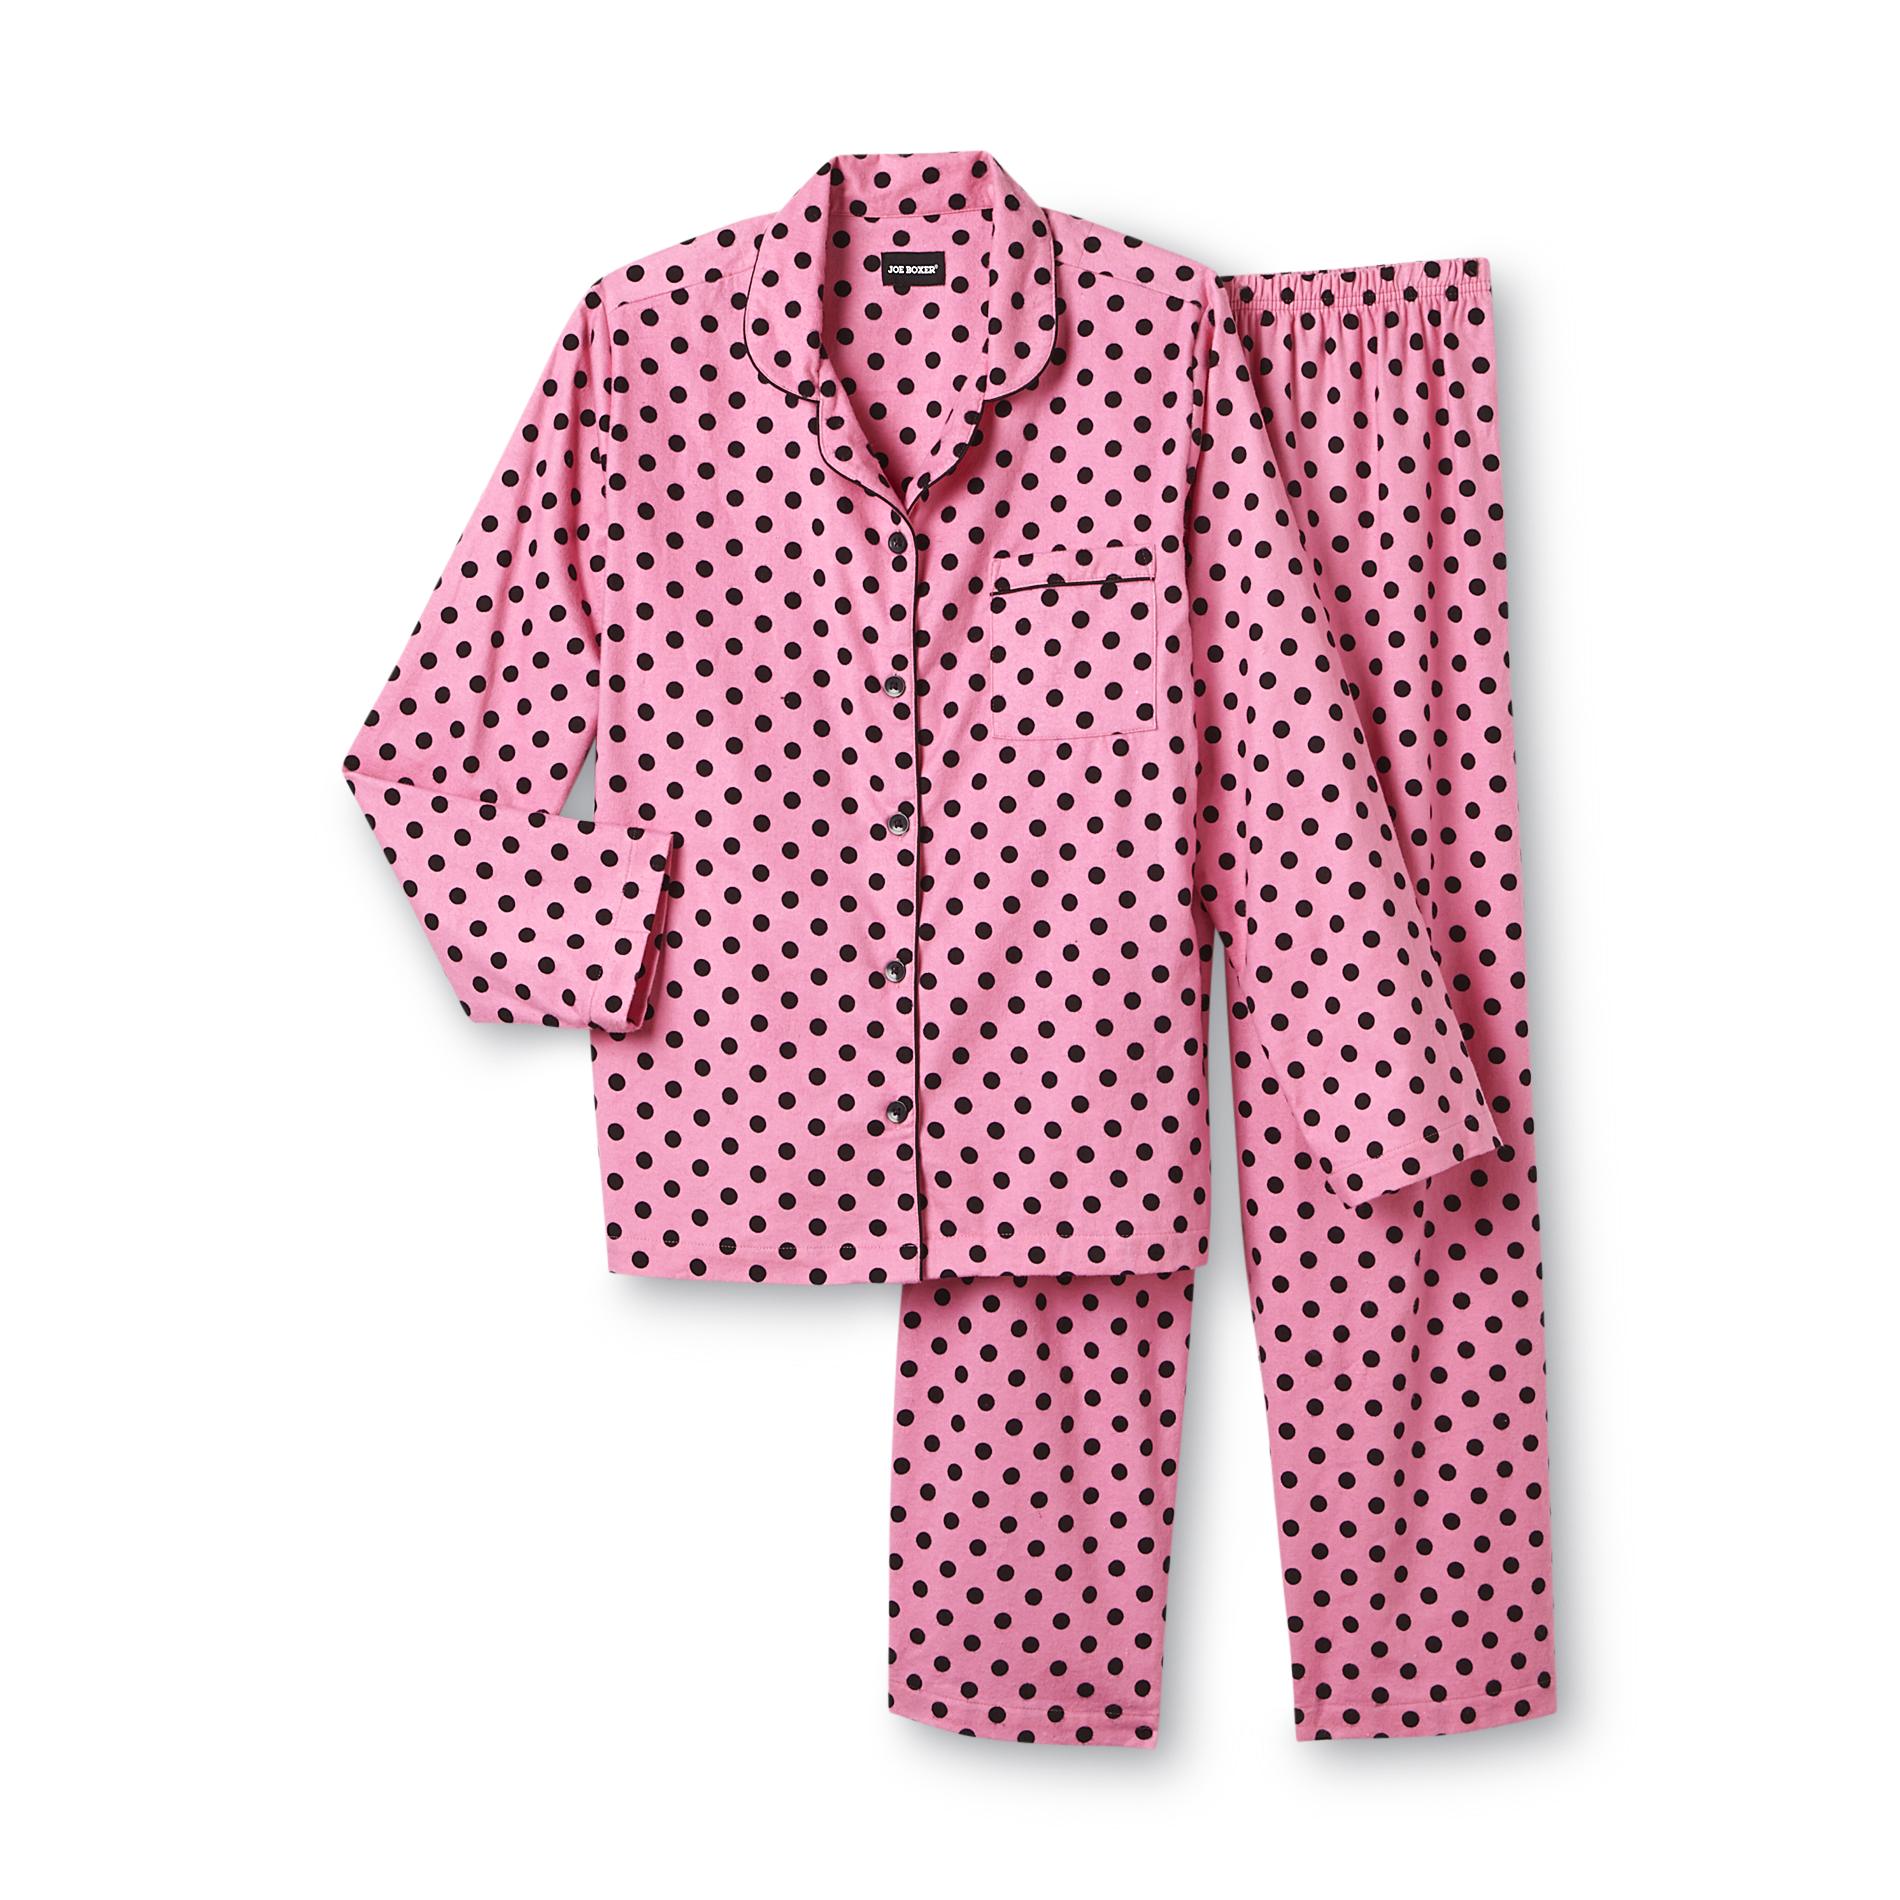 Joe Boxer Women's 2-Piece Flannel Pajama Set - Polka Dot